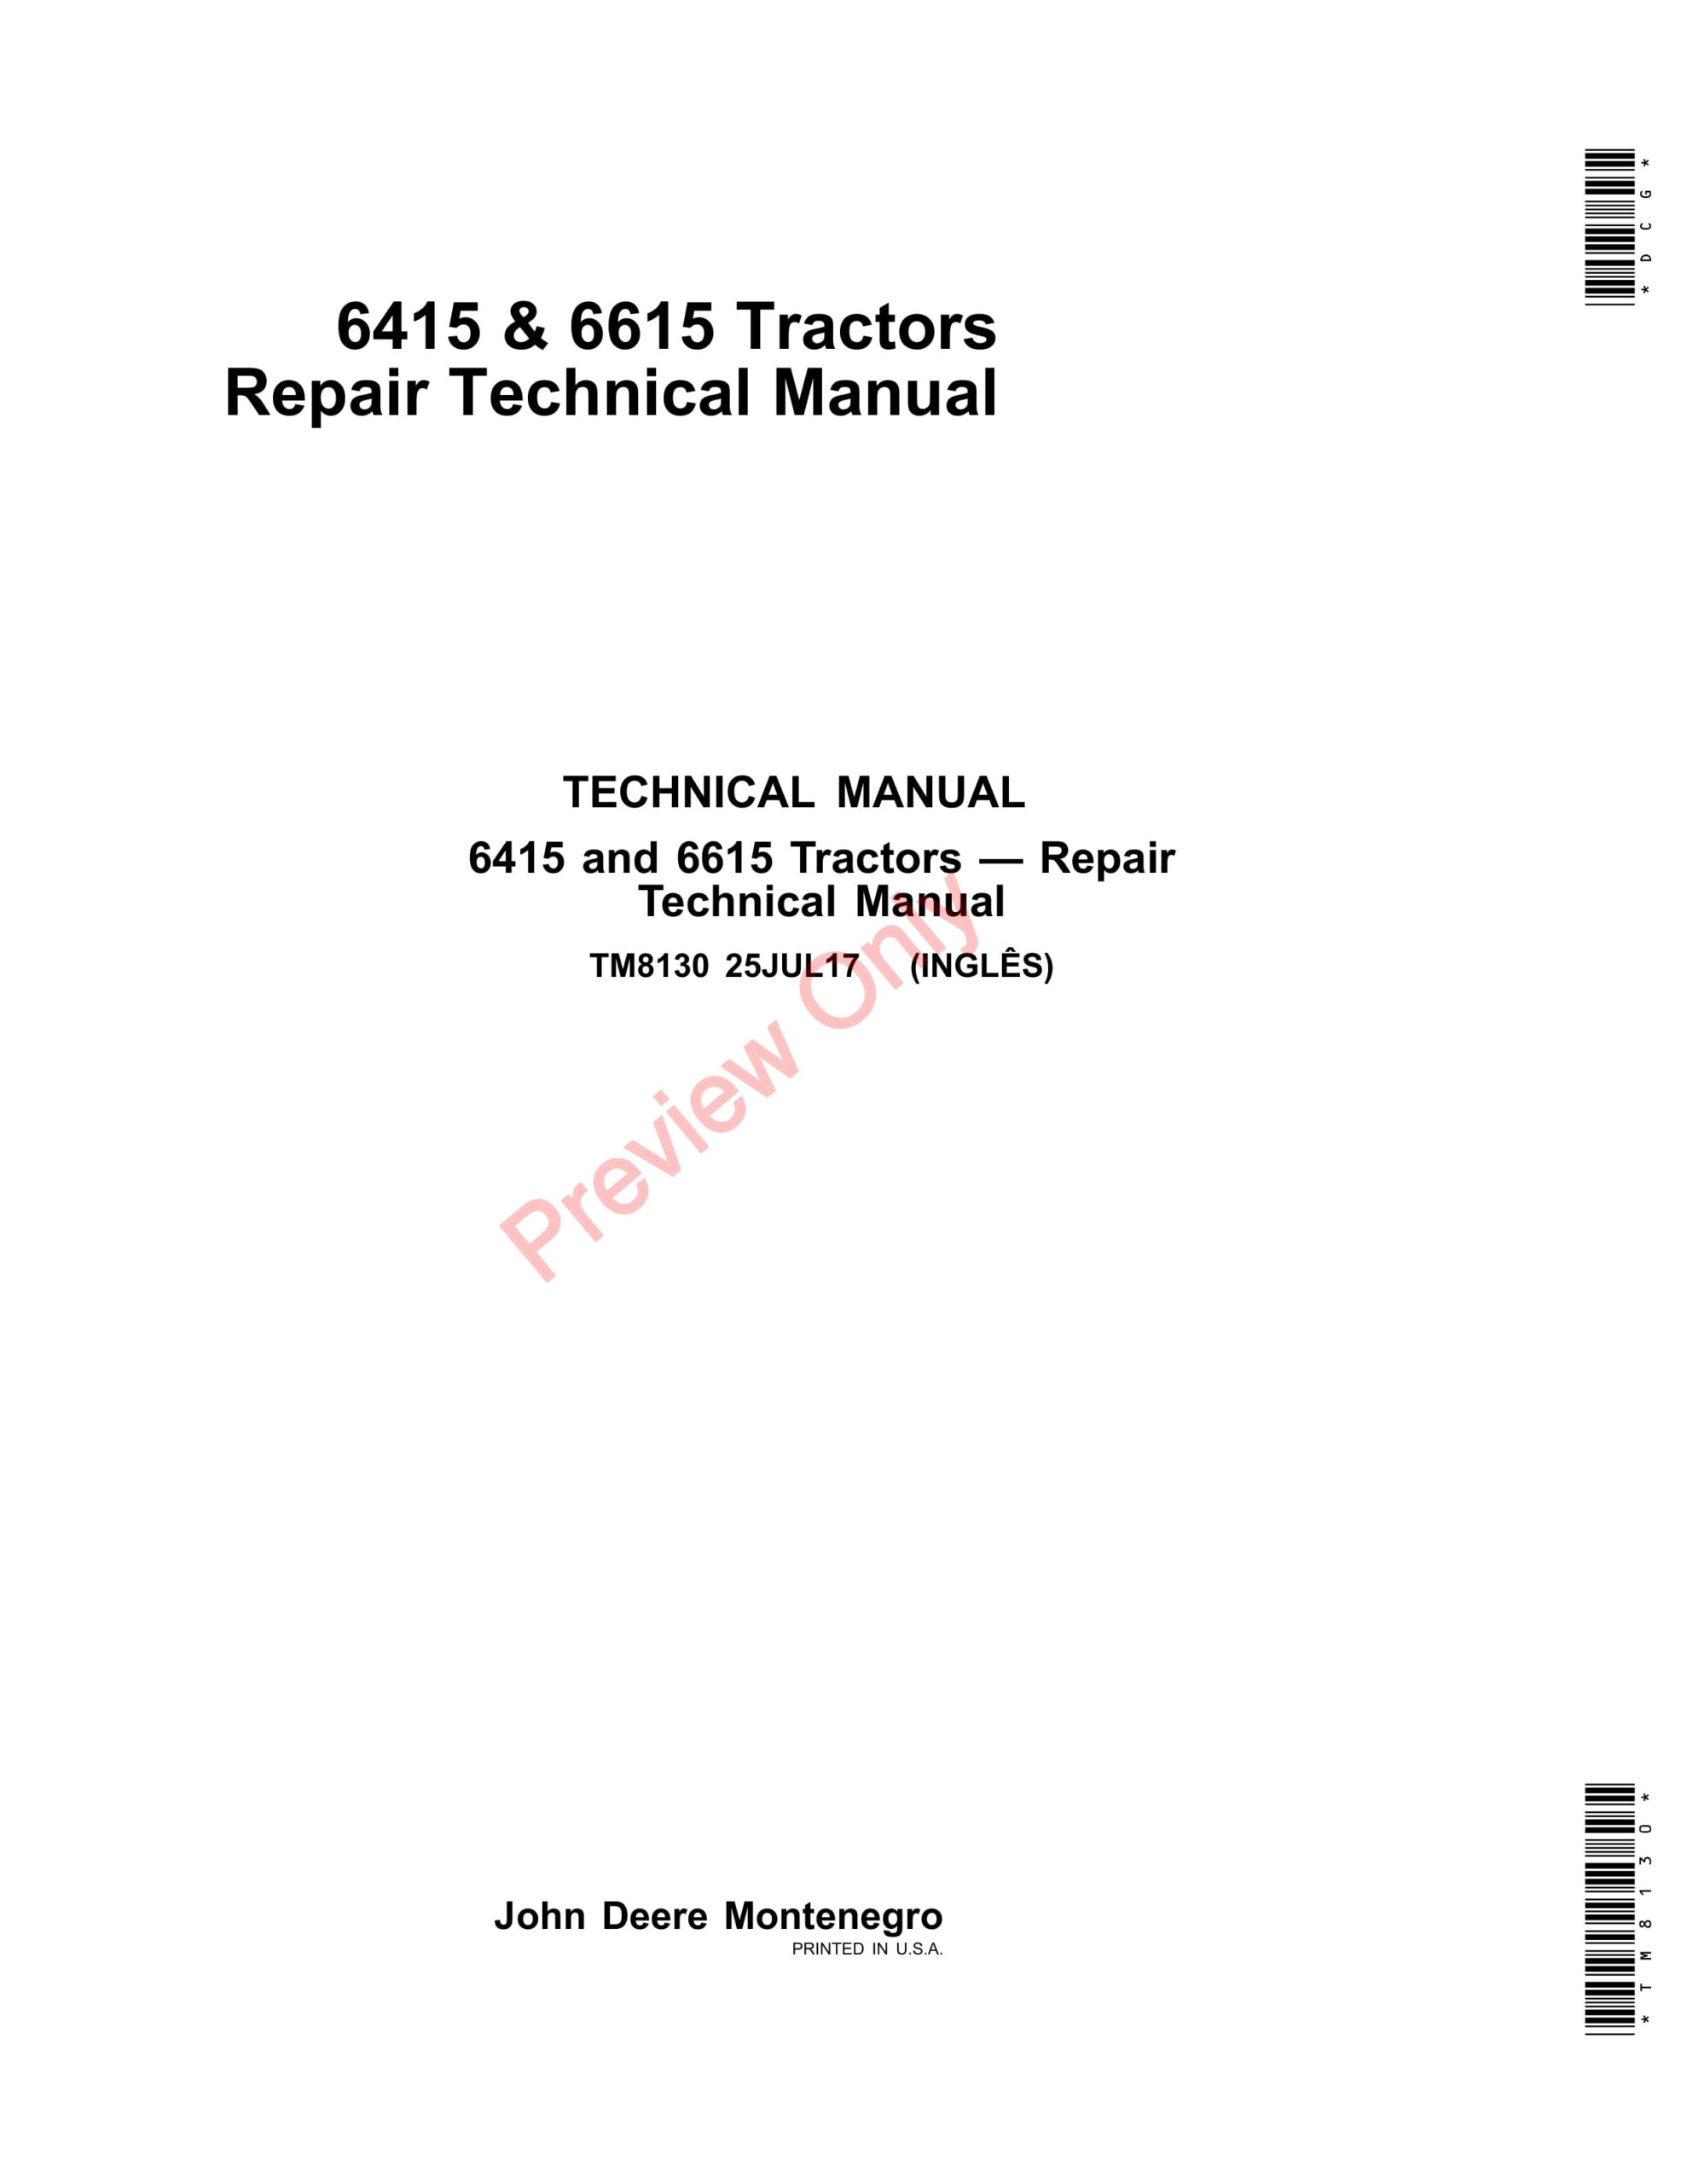 John Deere 6415 and 6615 Tractors Repair Technical Manual TM8130 25JUL17-1